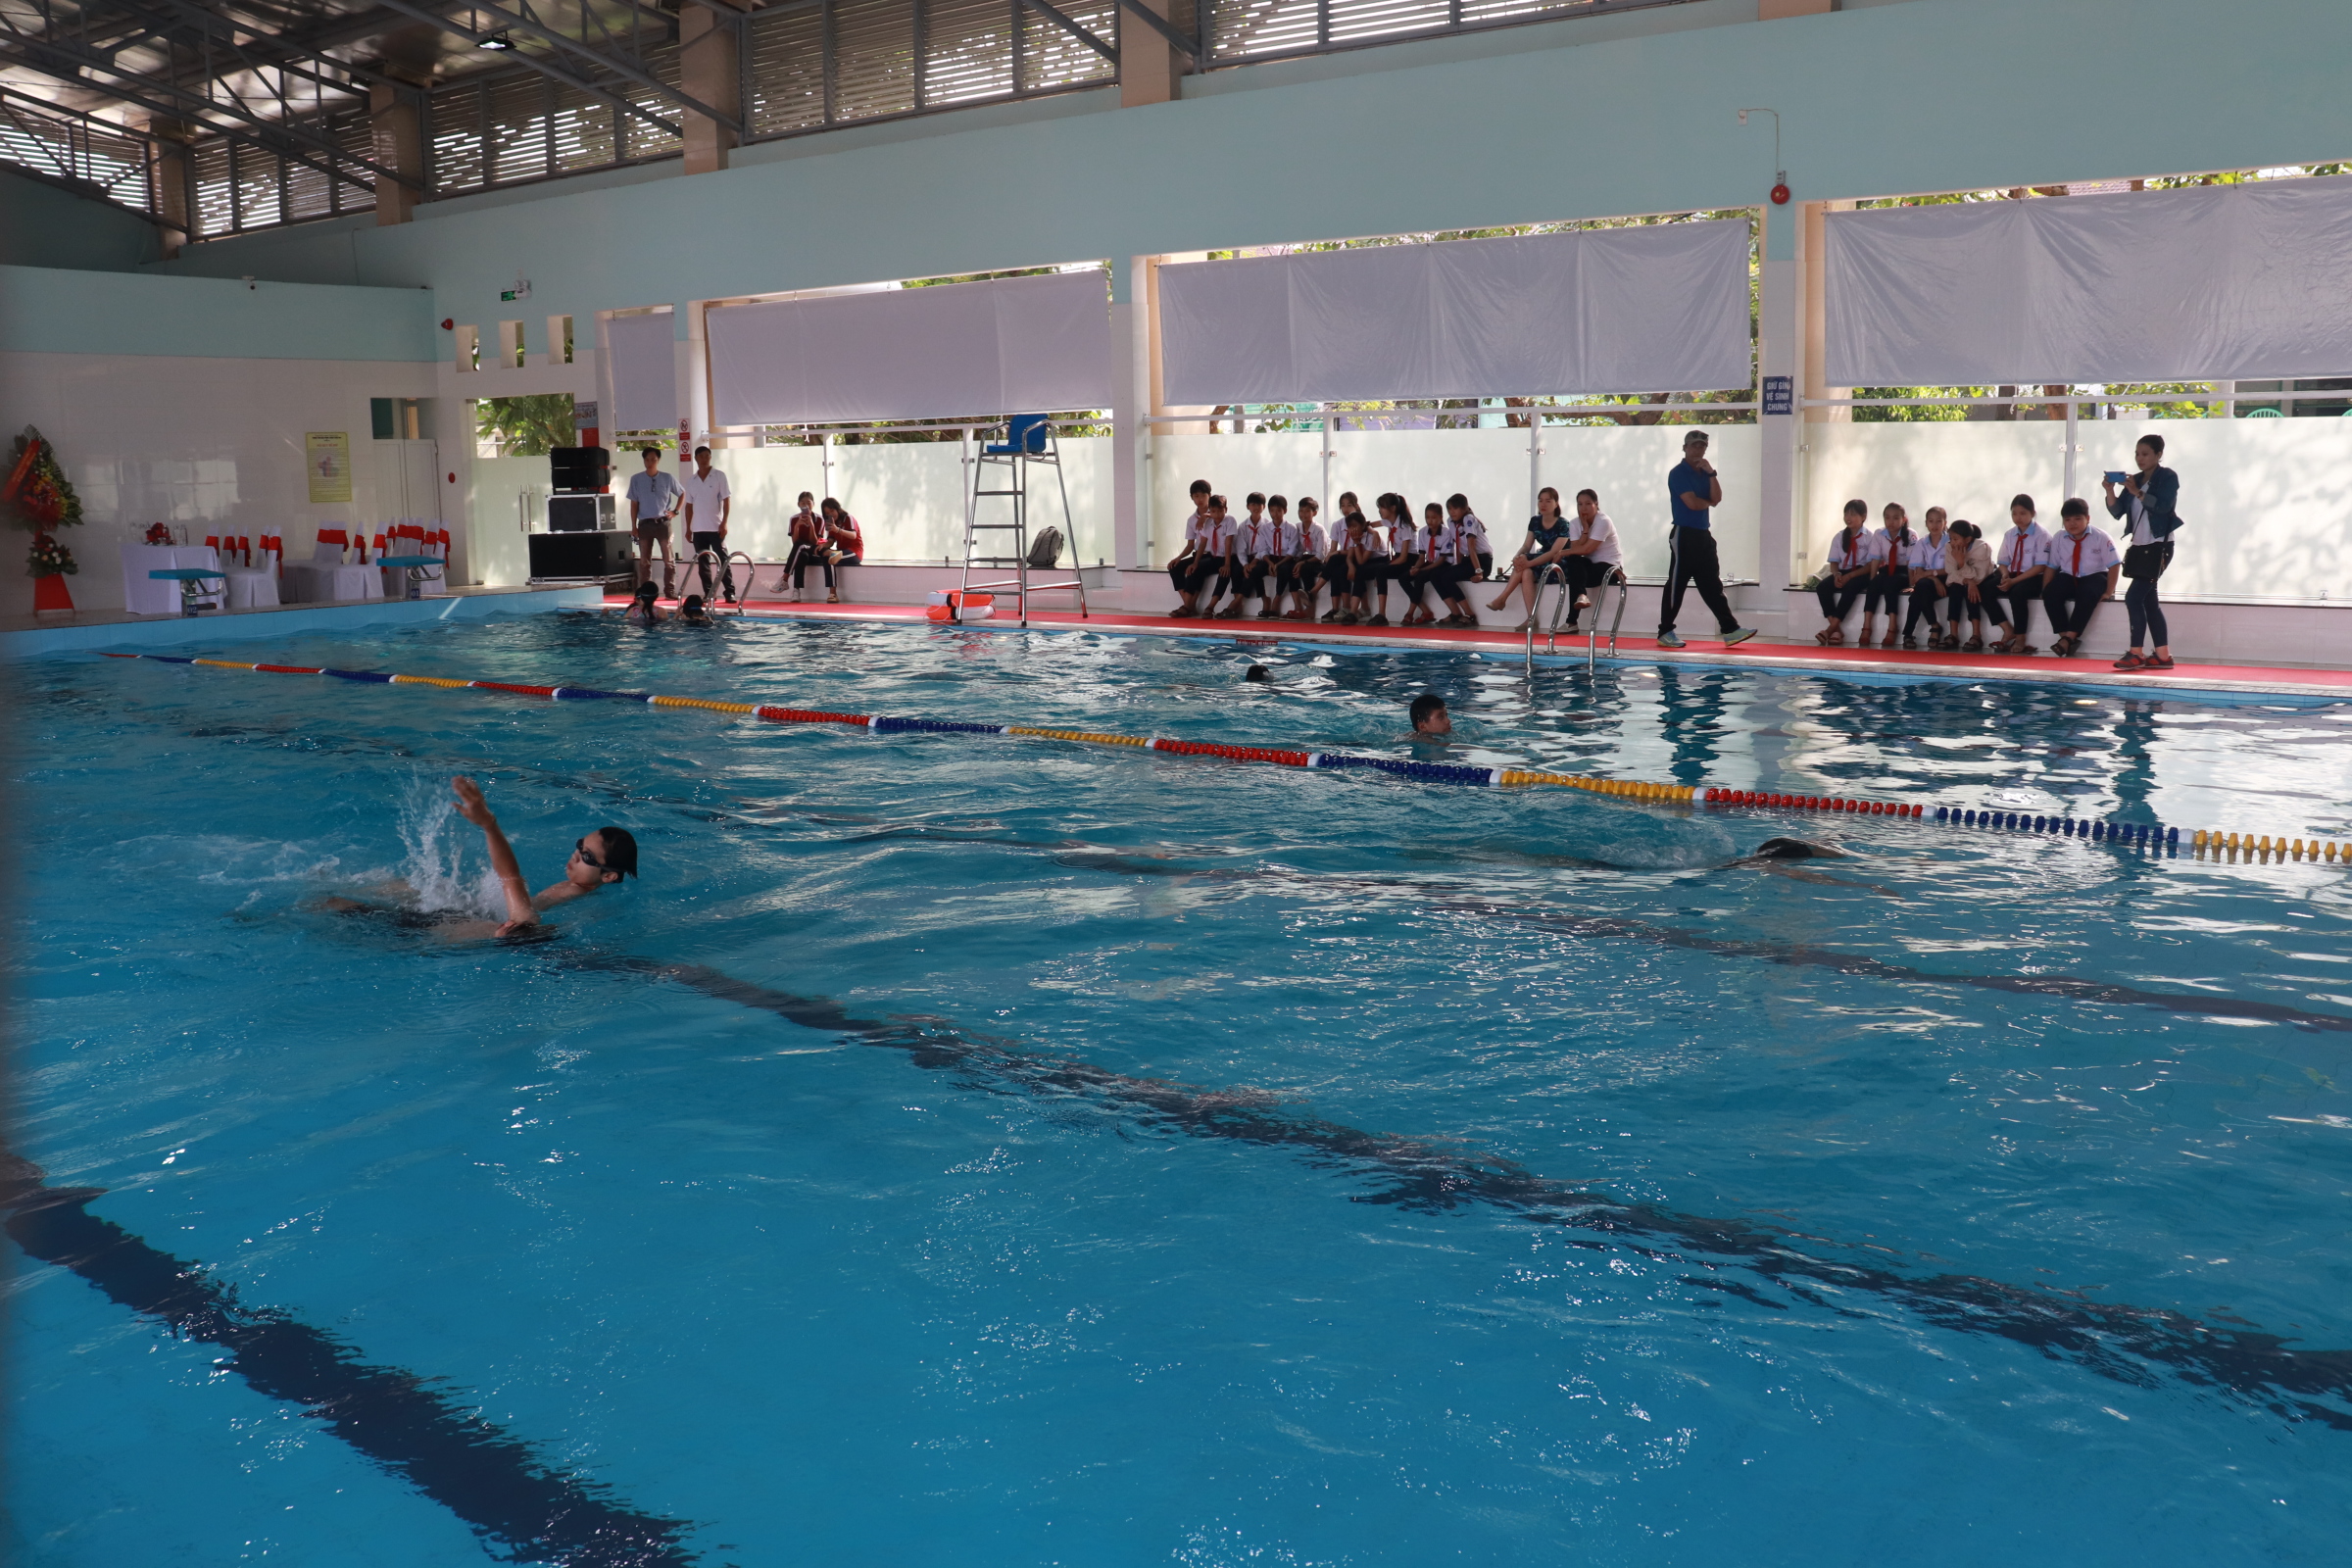 Câu lạc bộ bơi lội hè 2017 Lan tỏa niềm đam mê với môn thể thao bổ ích